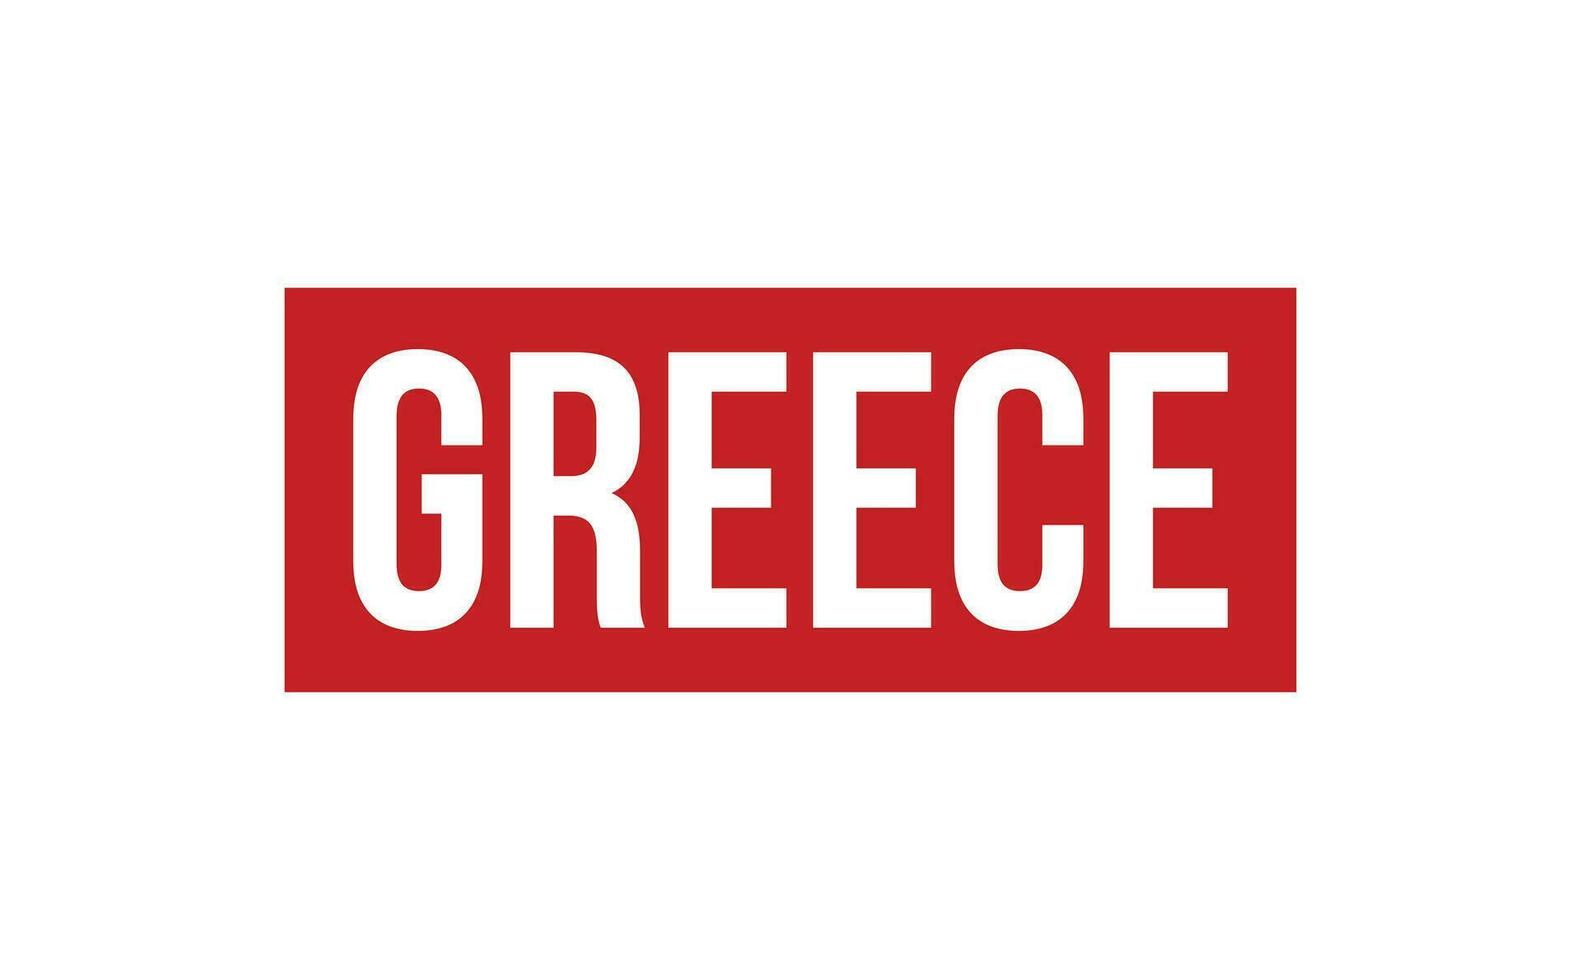 Grecia caucho sello sello vector